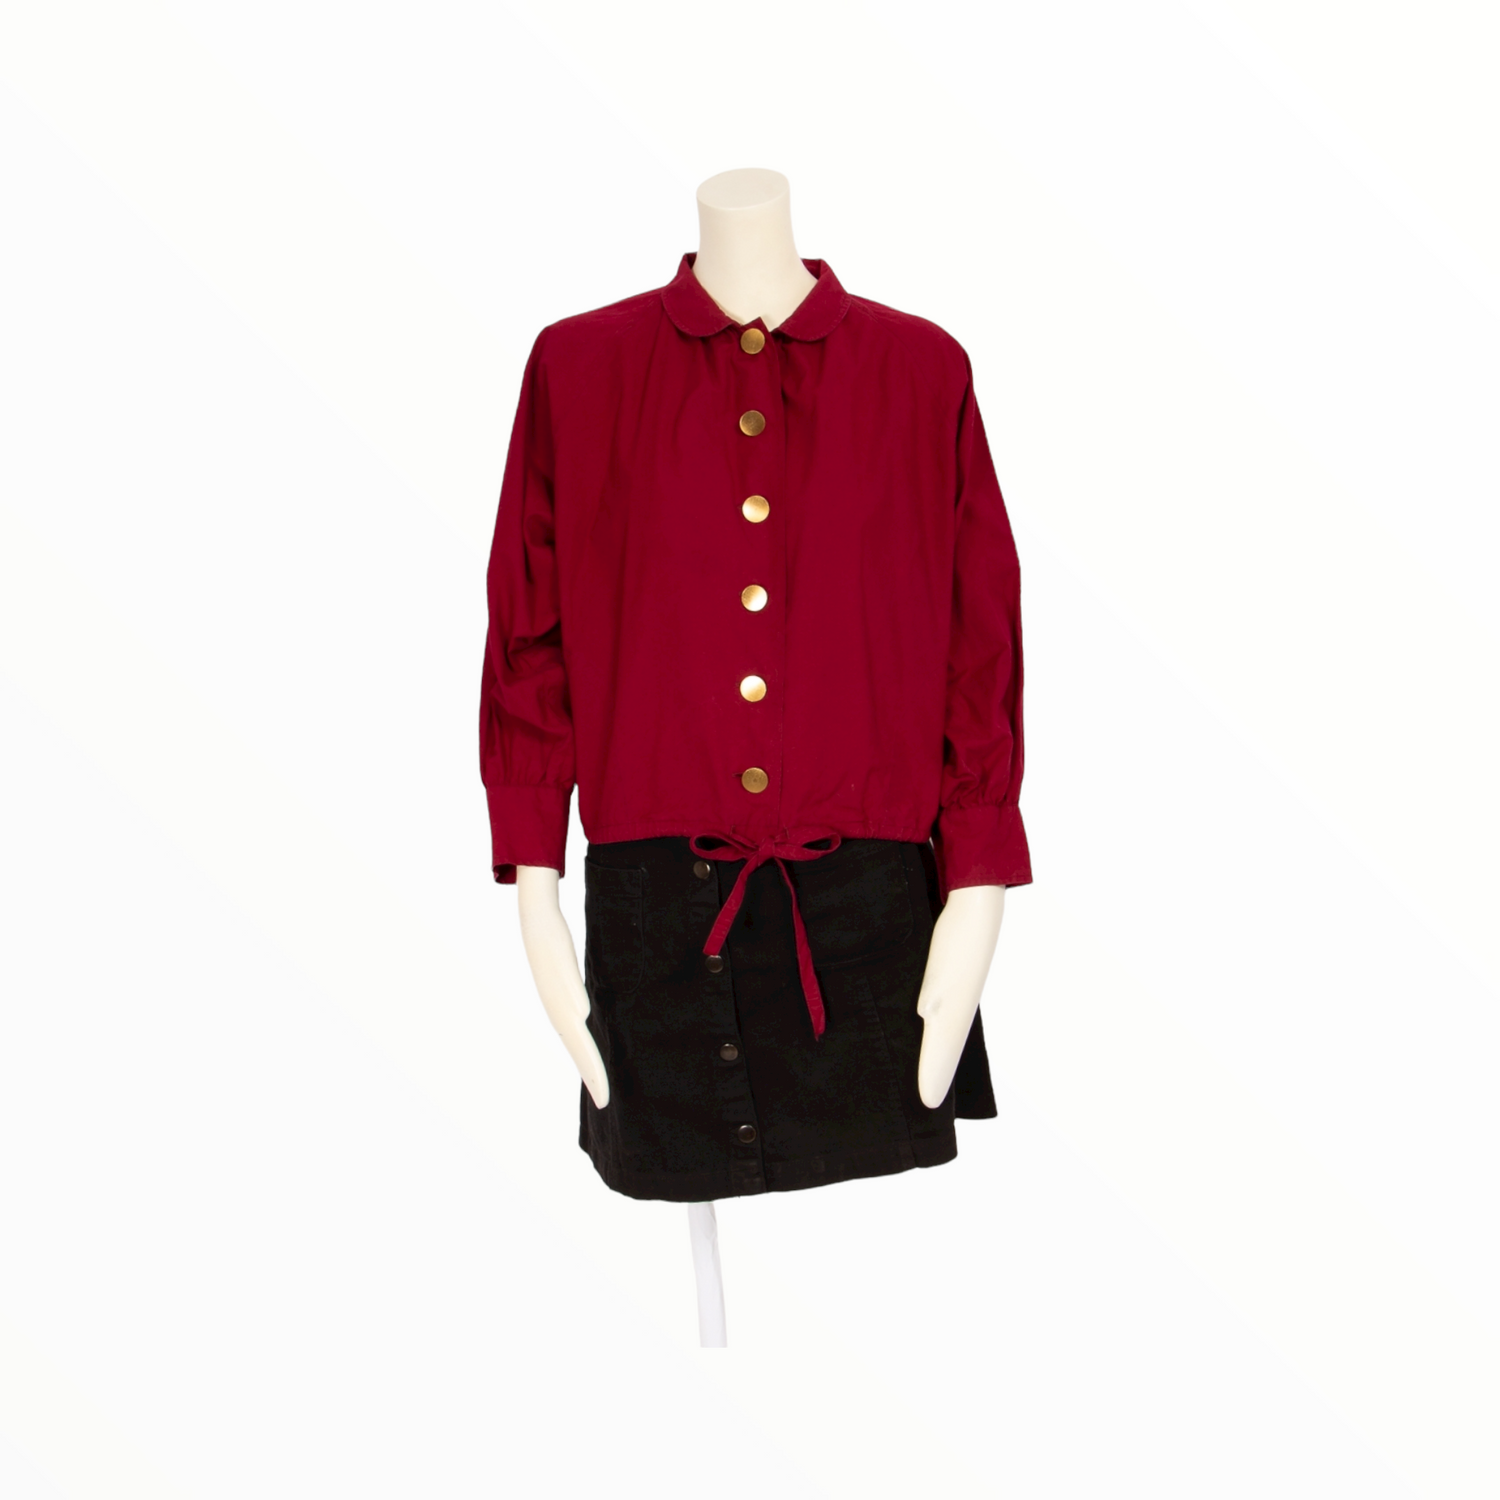 Saint Laurent Rive Gauche vintage burgundy jacket - S - 1970s